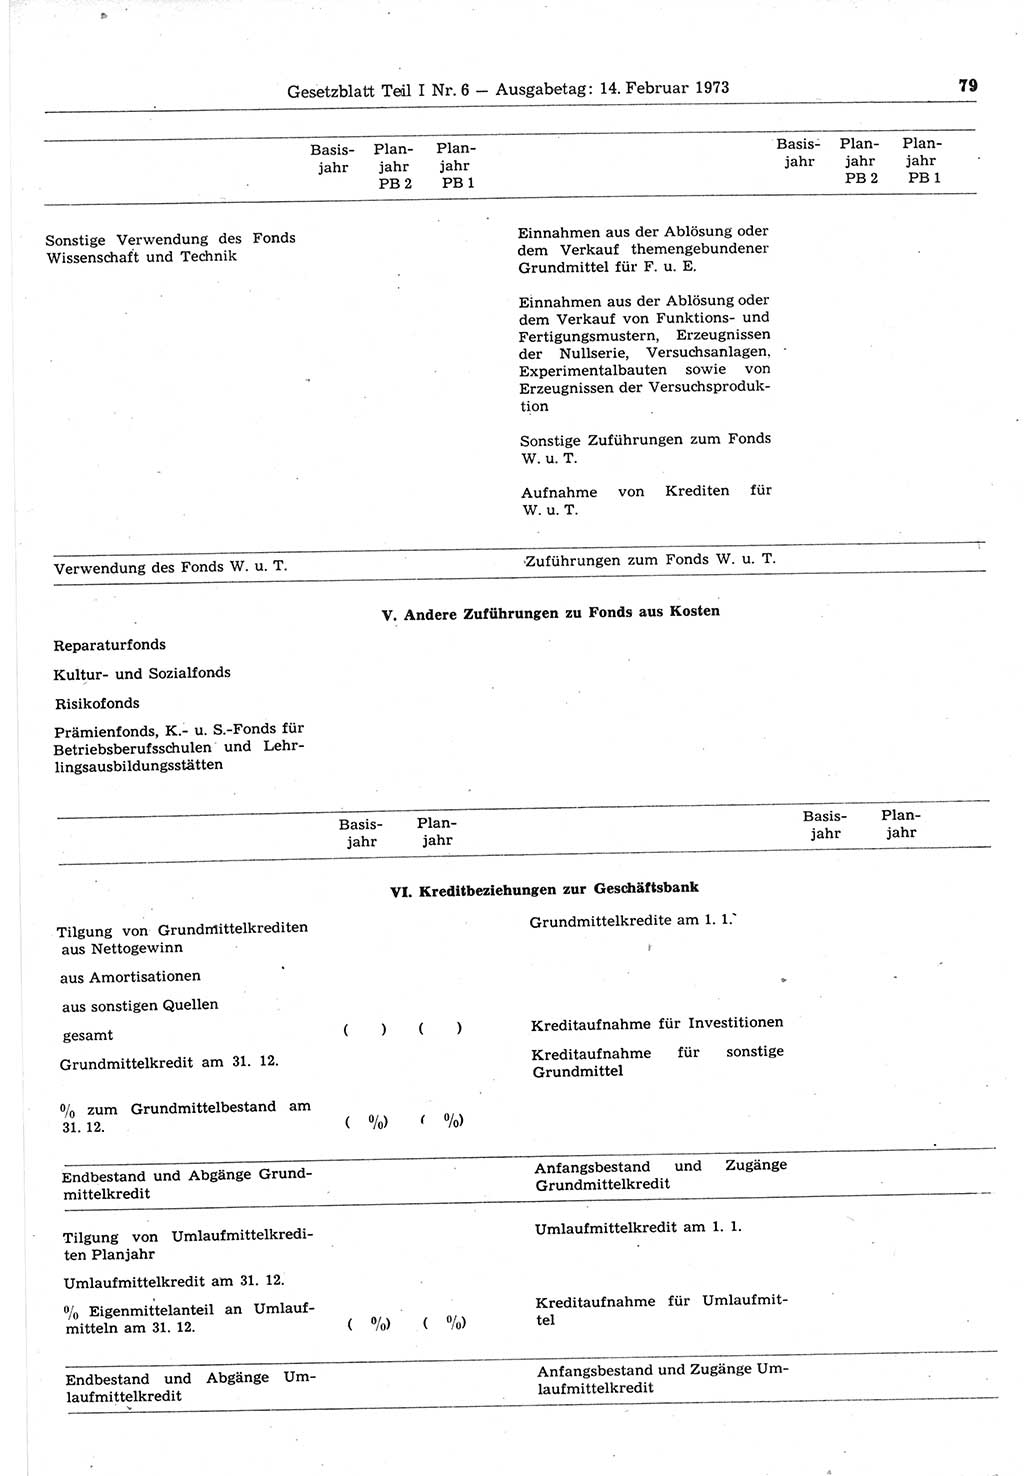 Gesetzblatt (GBl.) der Deutschen Demokratischen Republik (DDR) Teil Ⅰ 1973, Seite 79 (GBl. DDR Ⅰ 1973, S. 79)